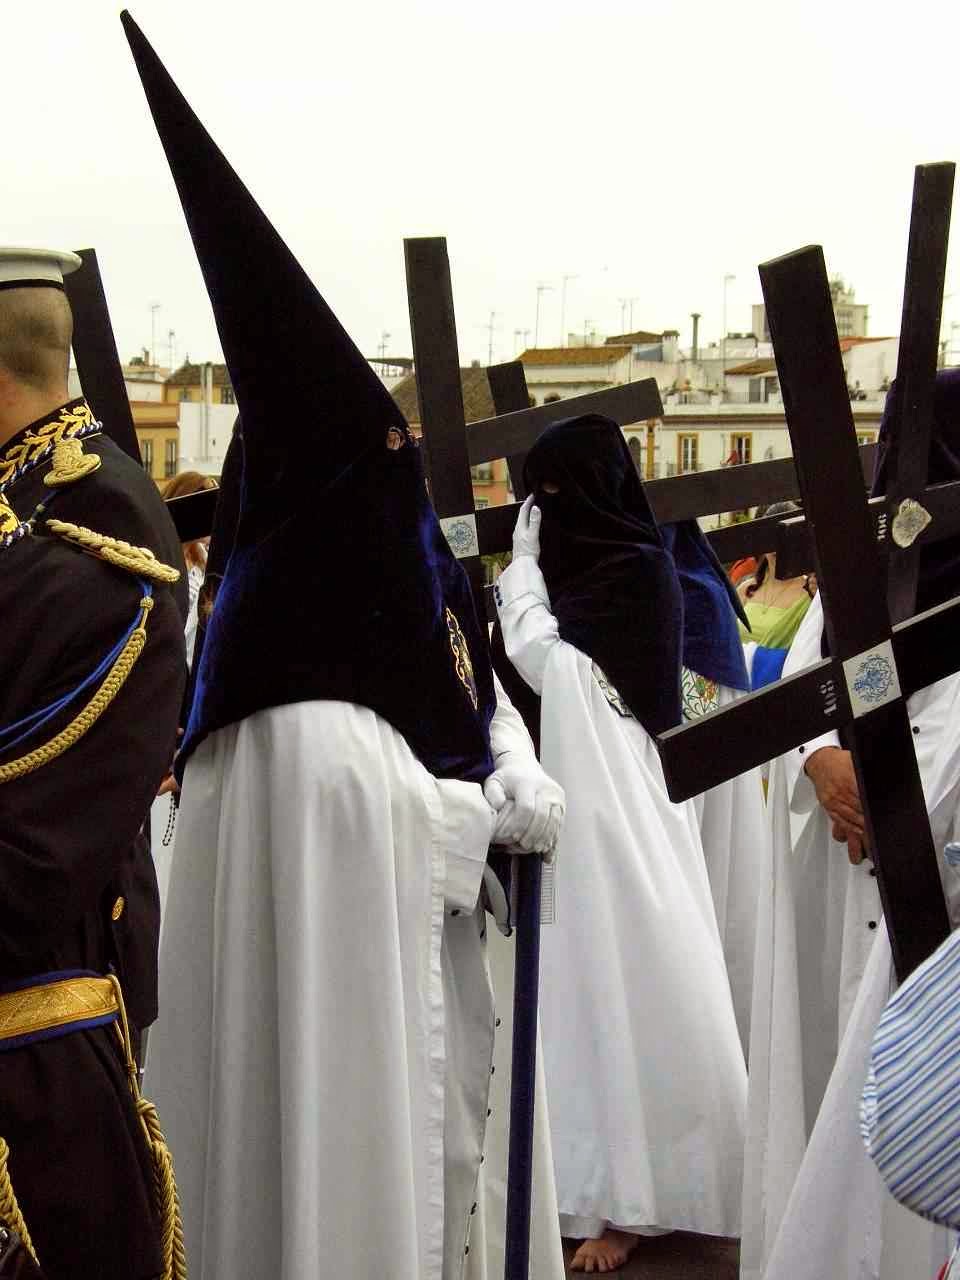 Confraria de penitentes carregando a Cruz, Semana Santa, Sevilha, Espanha.